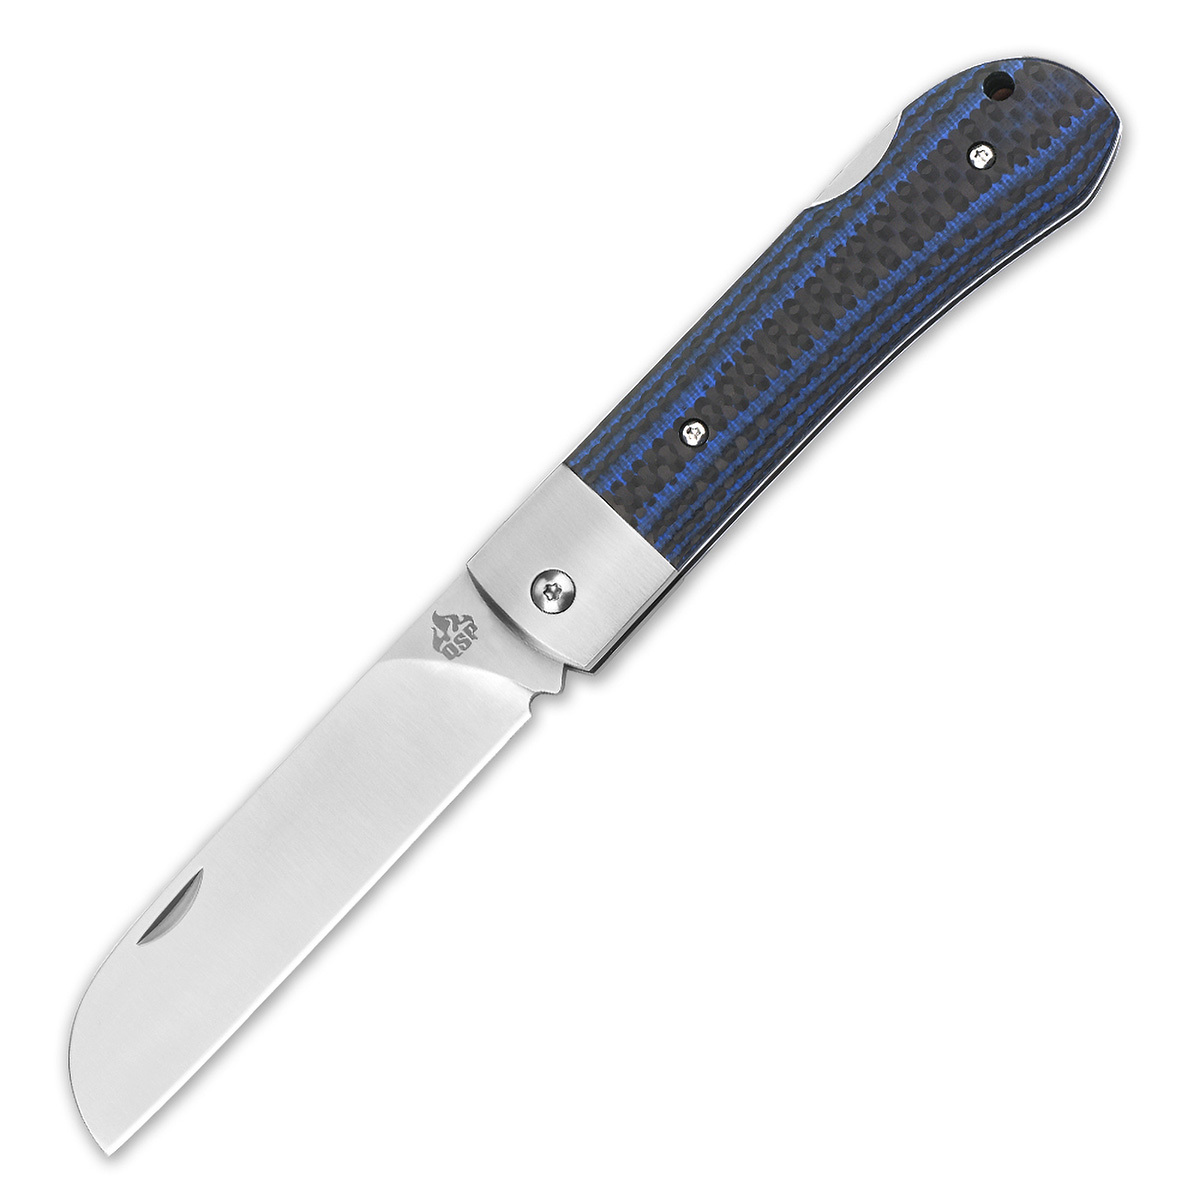 Складной нож QSP Worker, сталь N690, рукоять Carbon/G10, Бренды, QSP